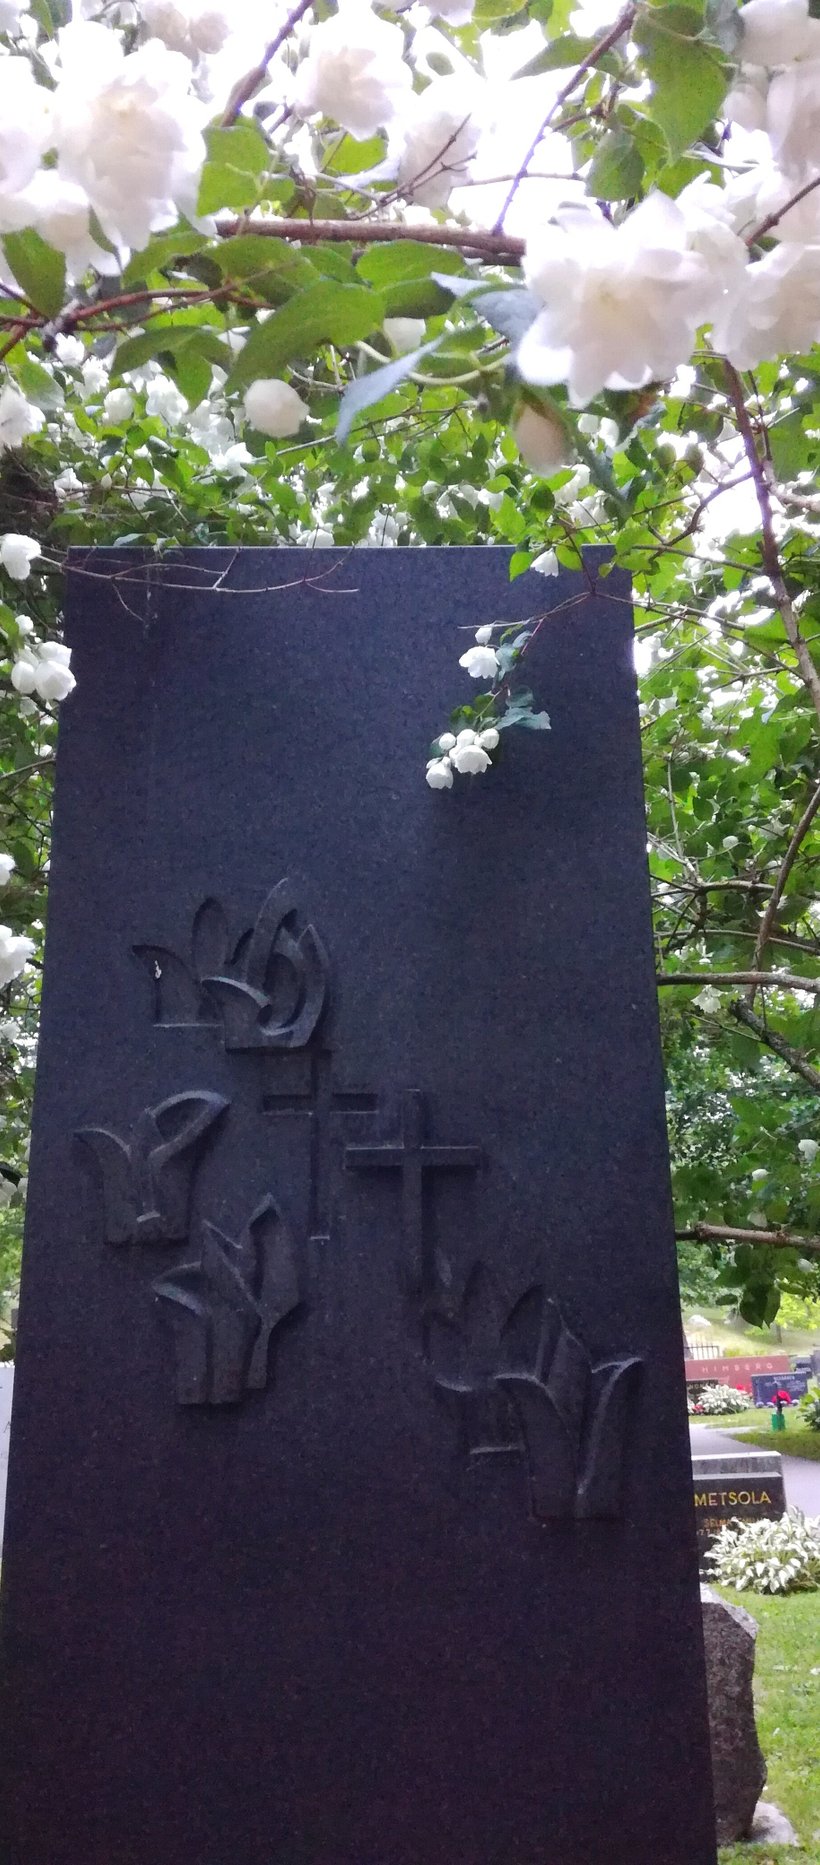 Valkoisia kukkia roikkuu oksissa Tuberkuloosiparantolan muistokiven yllä Naantalin kirkon hautausmaalla.